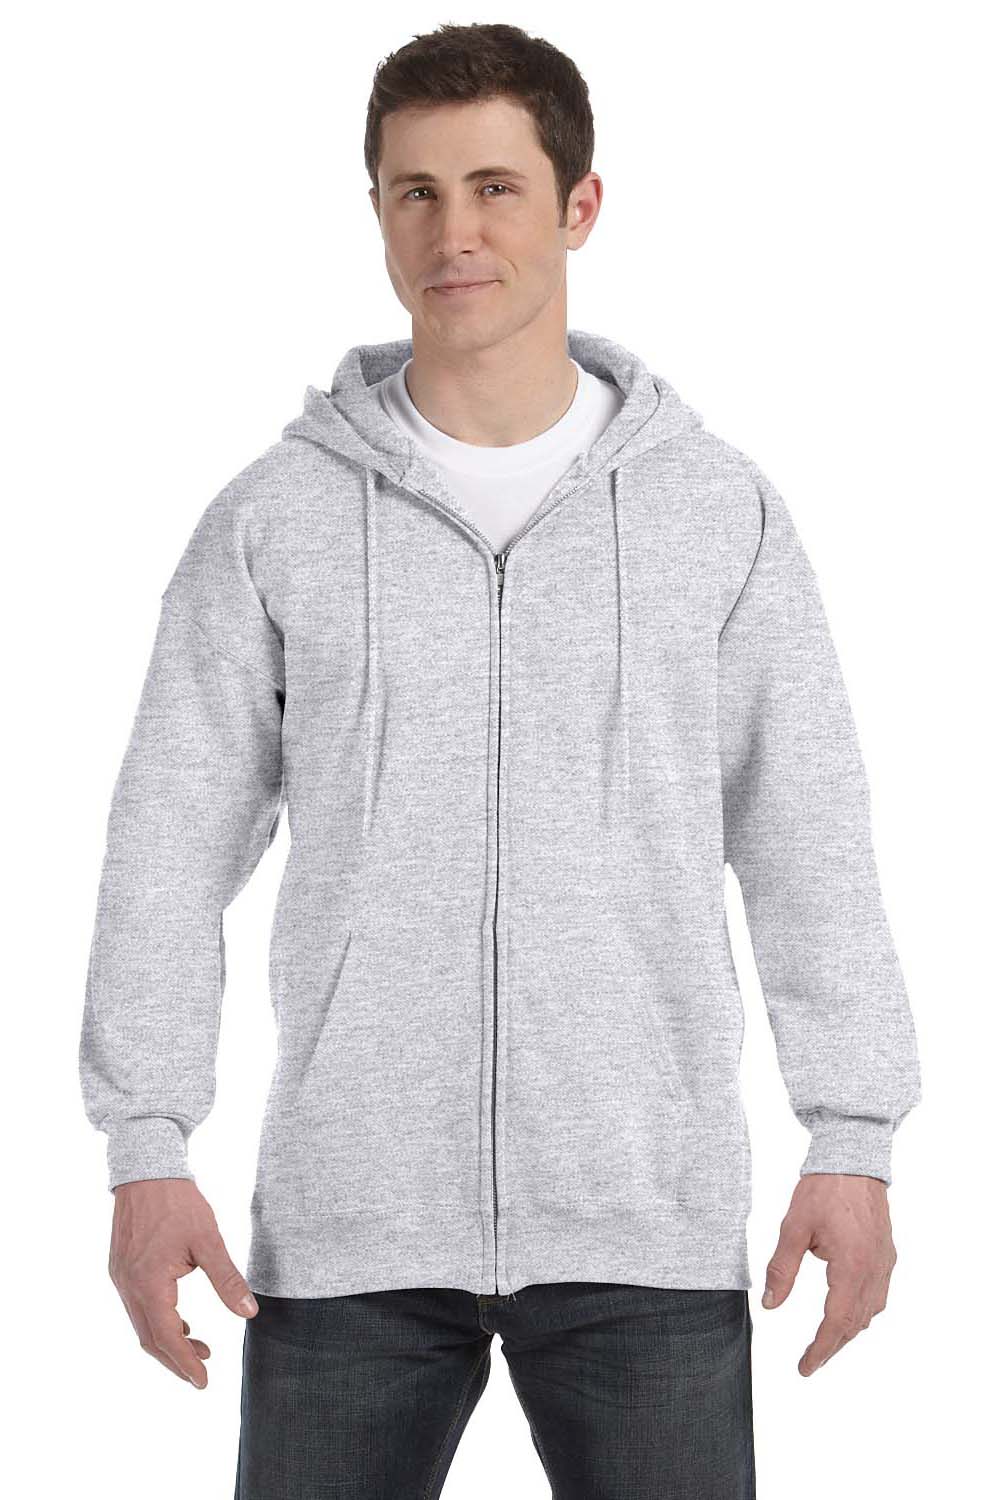 Hanes F280 Mens Ultimate Cotton PrintPro XP Full Zip Hooded Sweatshirt Hoodie Ash Grey Front